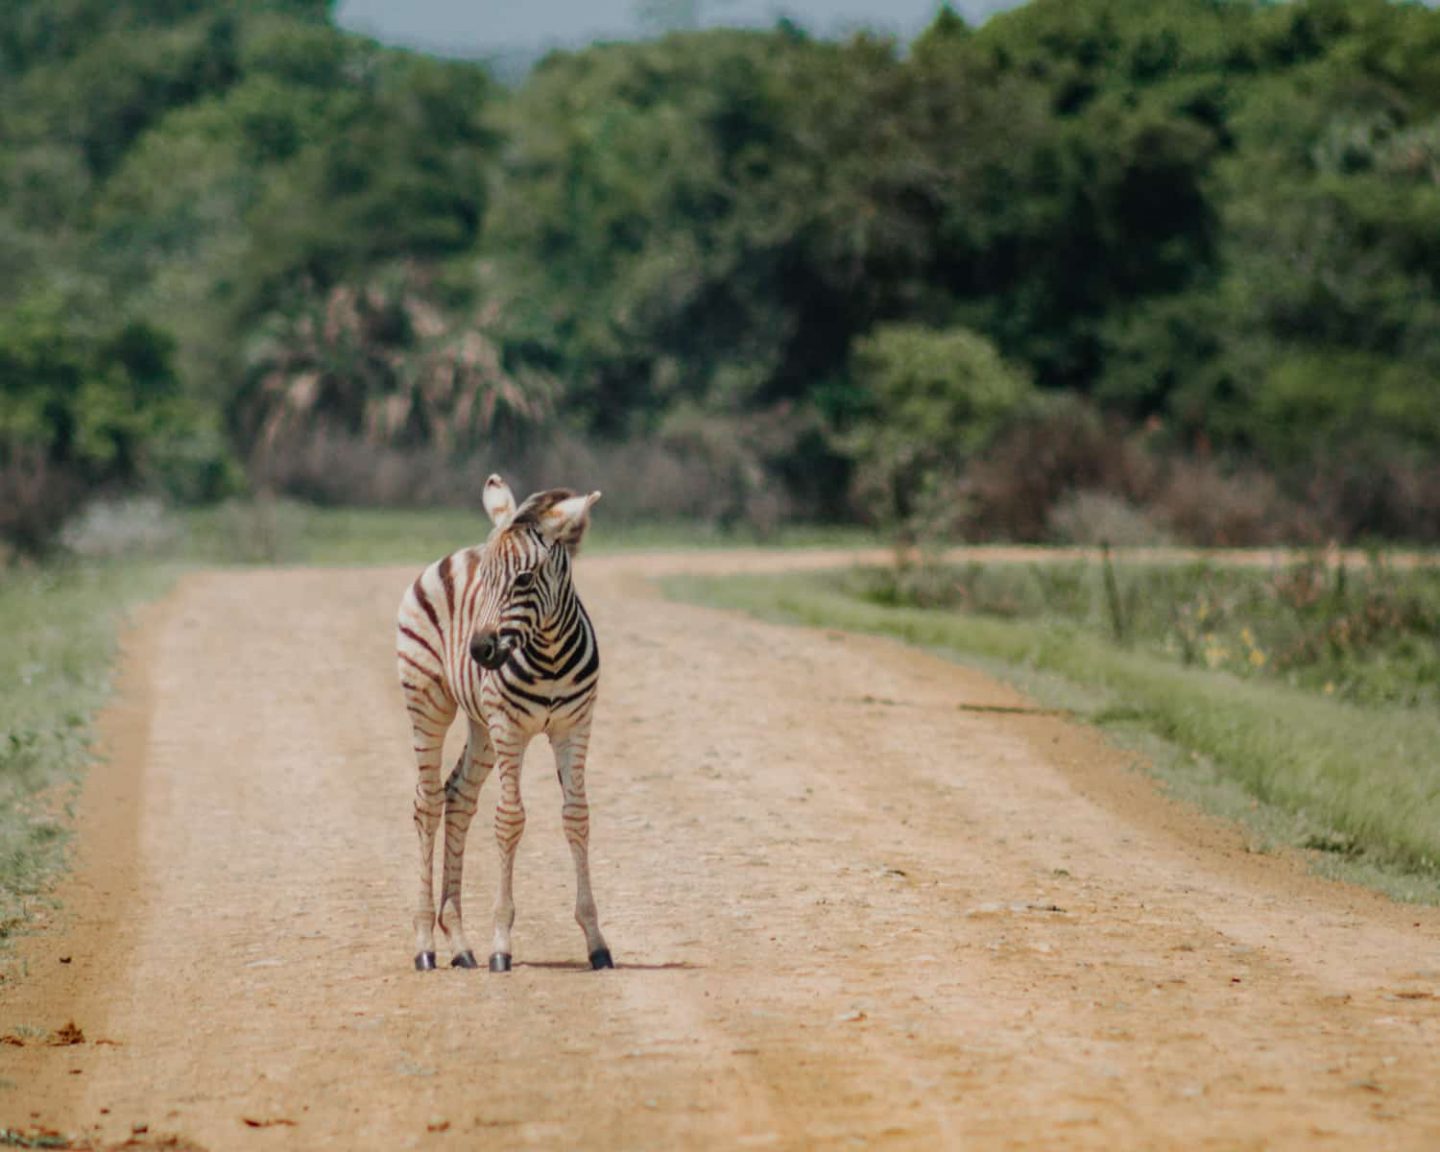 zebra at isimangaliso wetland park